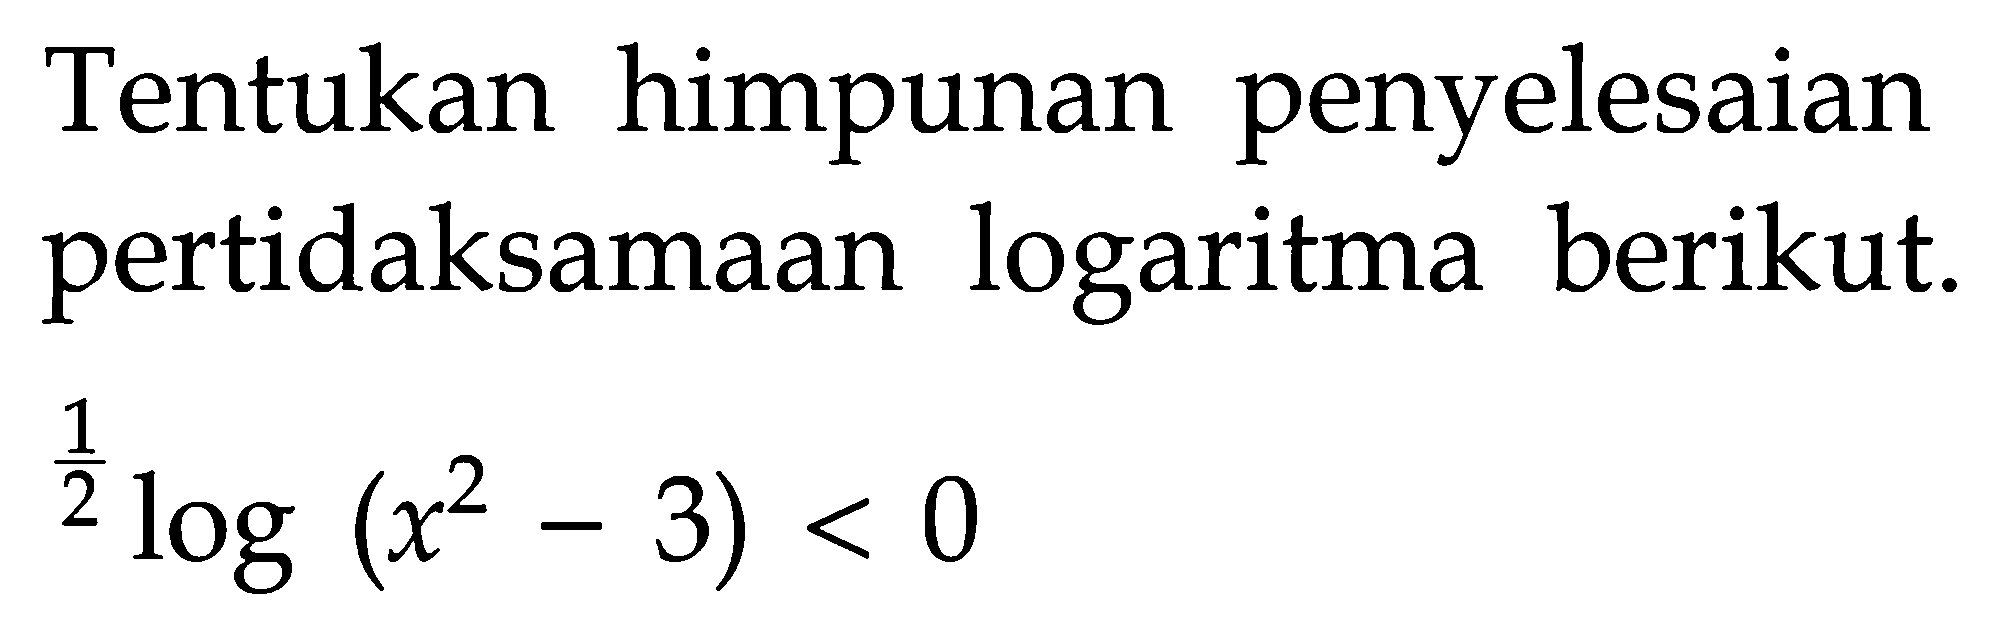 Tentukan himpunan penyelesaian pertidaksamaan logaritma berikut. (1/2)log(x^2-3)<0